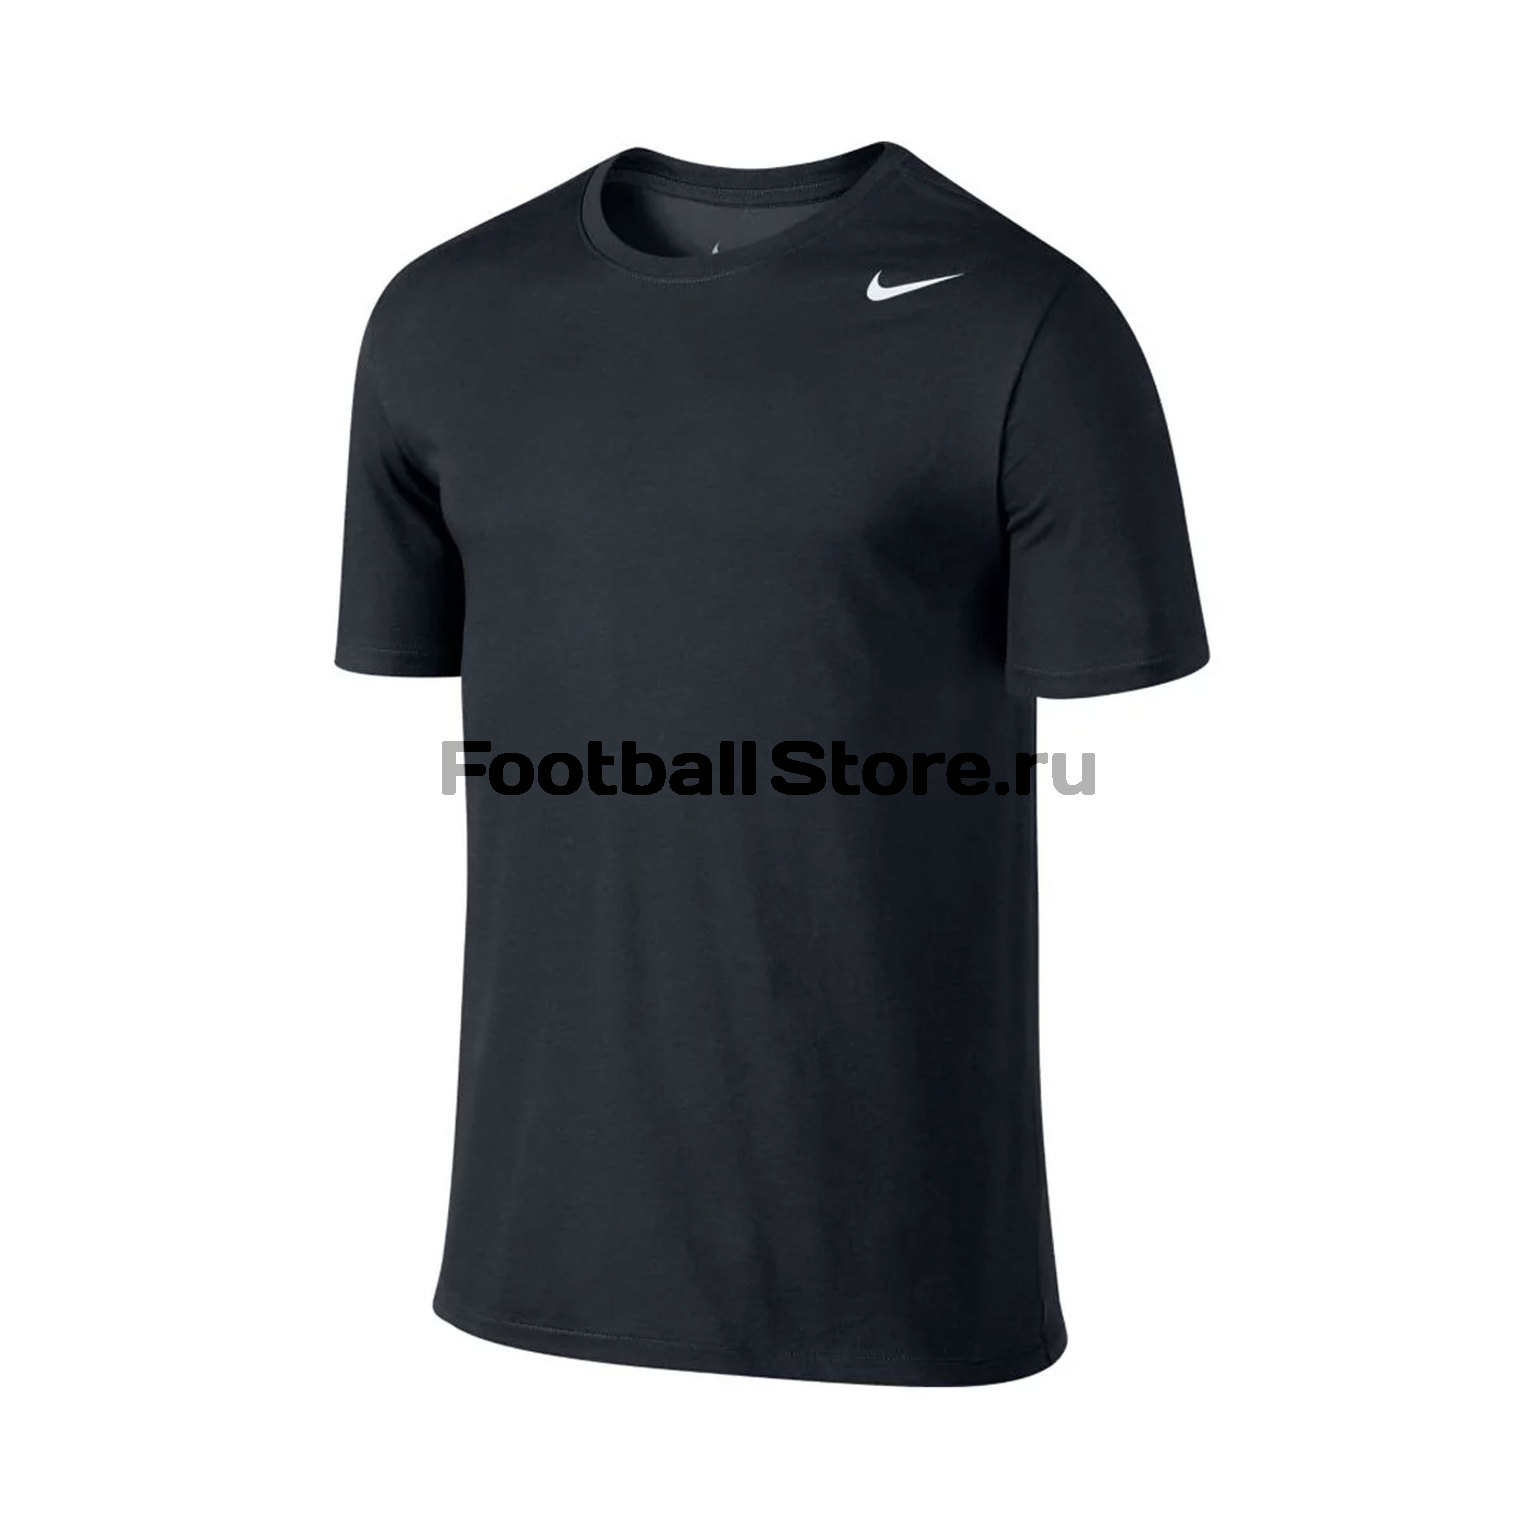 Футболка Nike Dry Tee DFC 2.0 706625-010